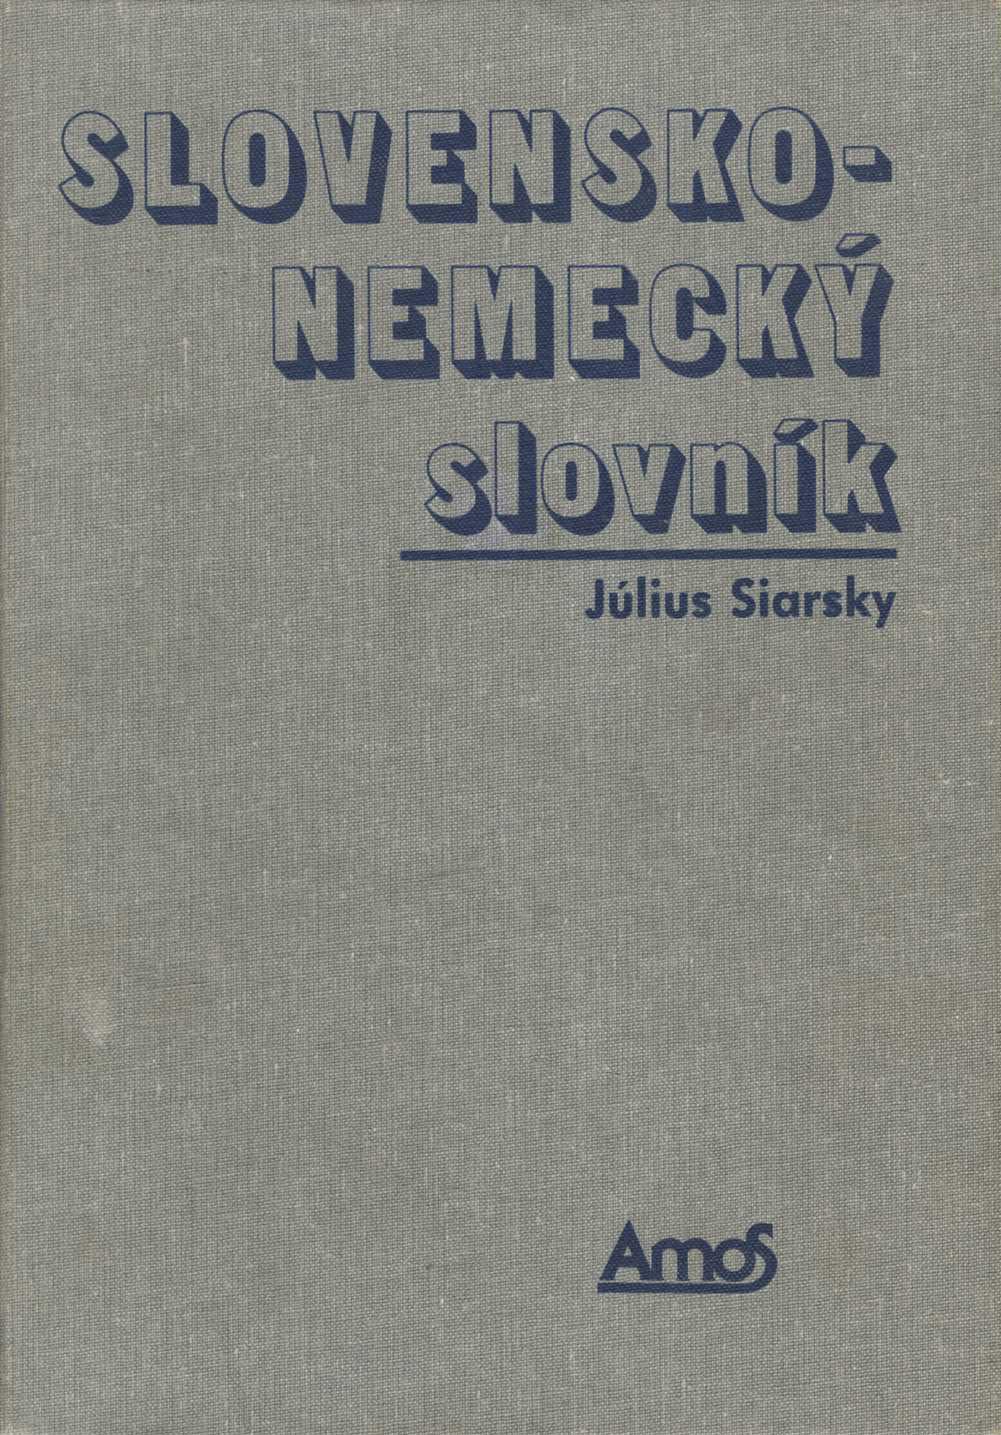 Slovensko - nemecký slovník (Július Siarsky)